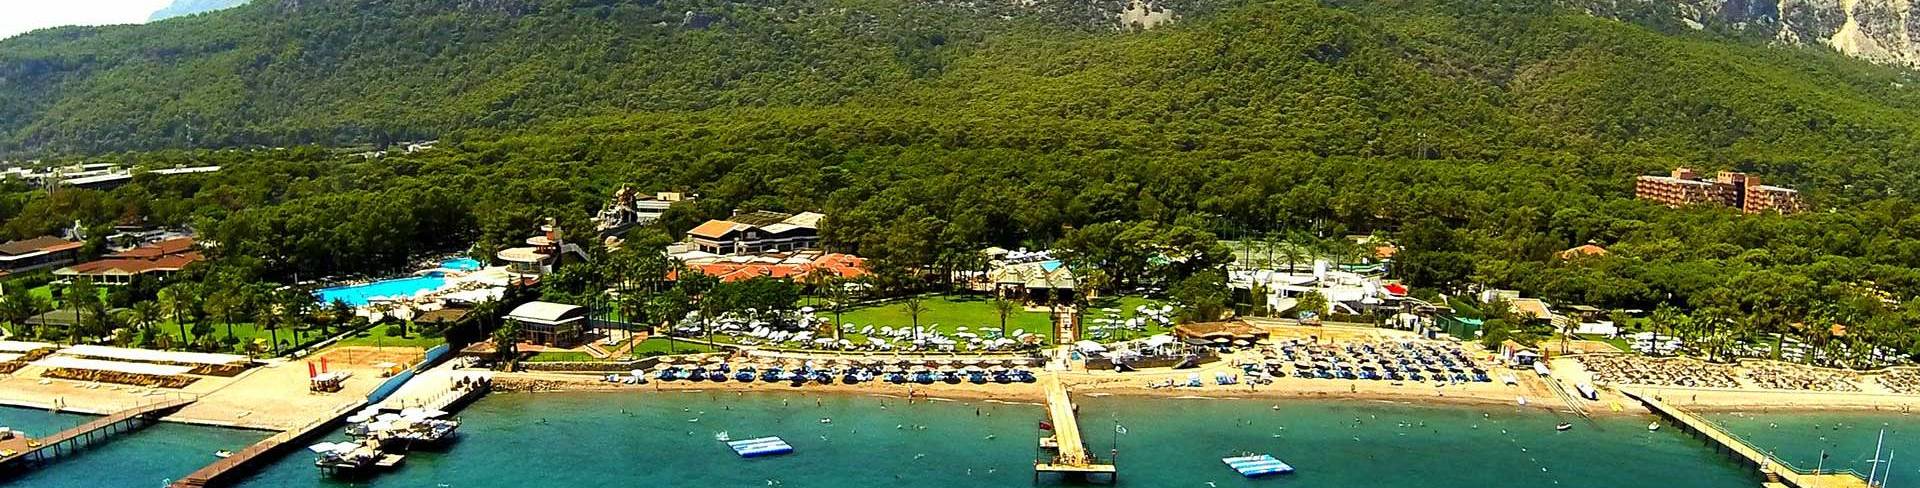 Кемер - пляжный курорт на Средиземном море в Турции